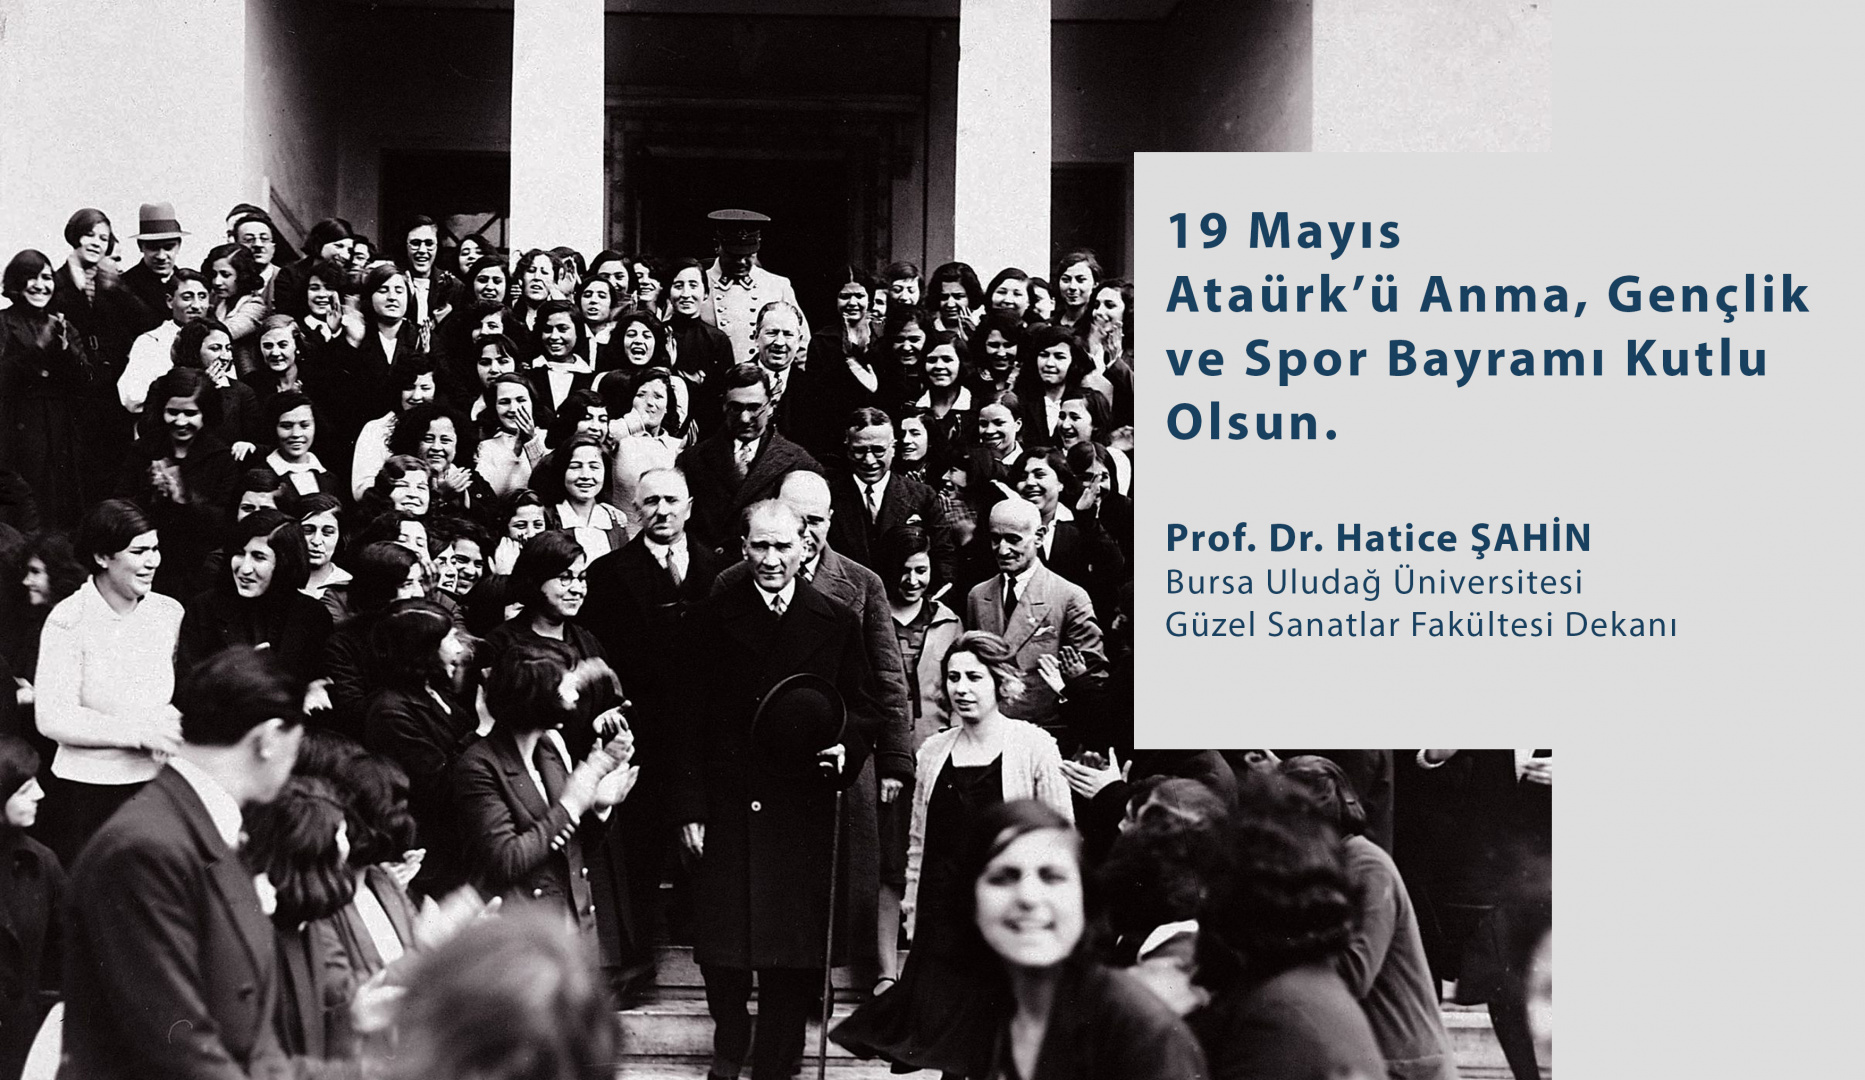  Sn. Dekanımız Prof. Dr. Hatice ŞAHİN'İN  19 Mayıs Atatürk'ü Anma, Gençlik ve Spor Bayramı Mesajı  